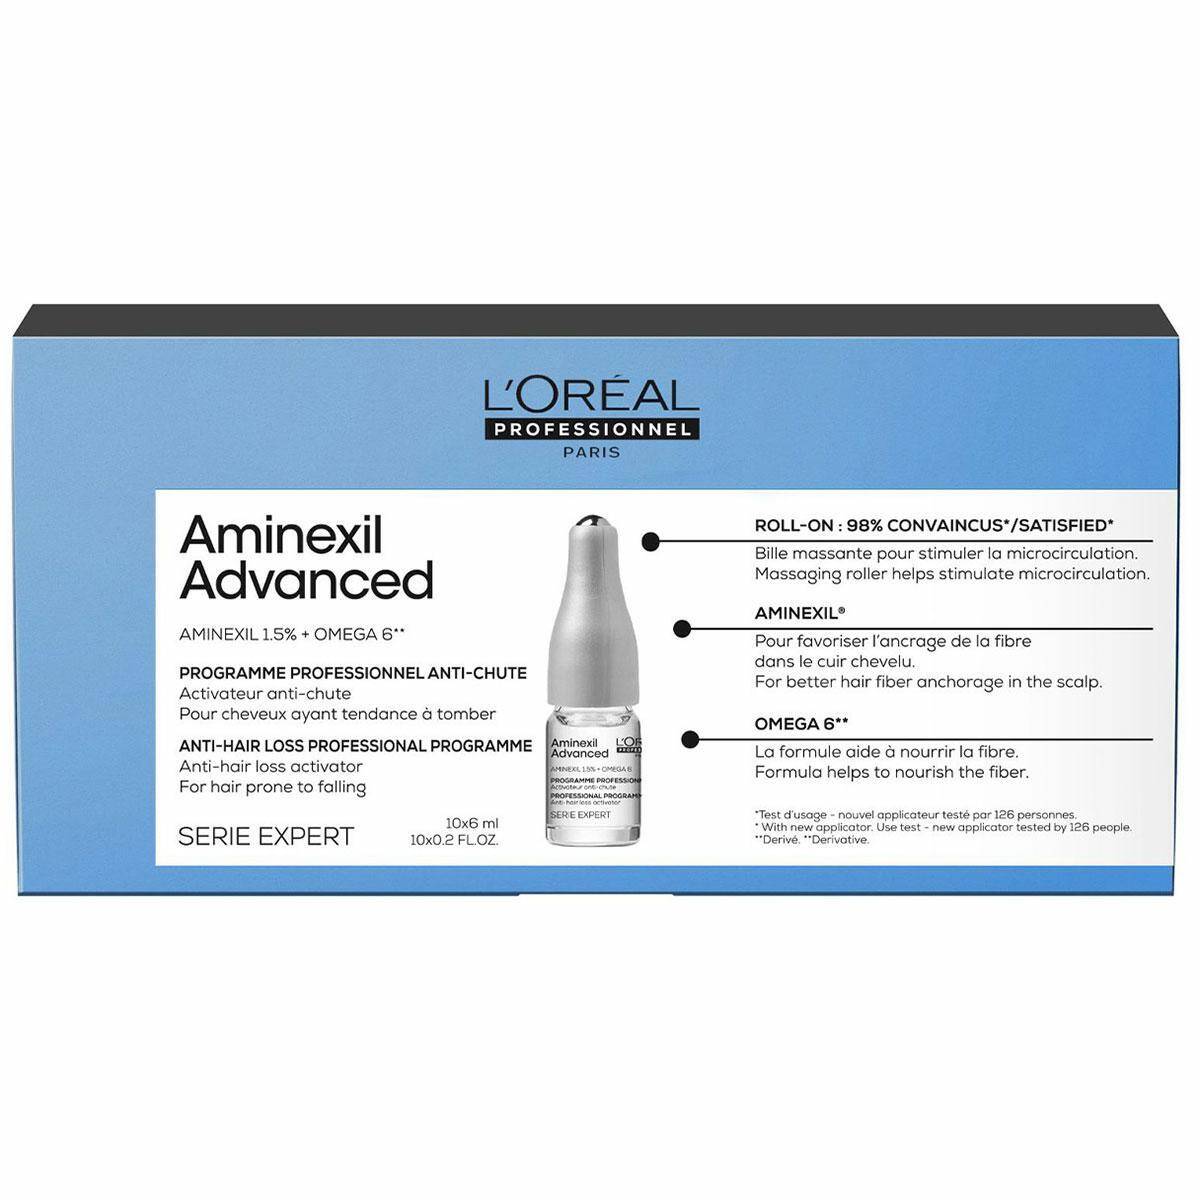 Loreal Aminexil Advanced Kuracja przeciw wypadaniu włosów 10x6ml